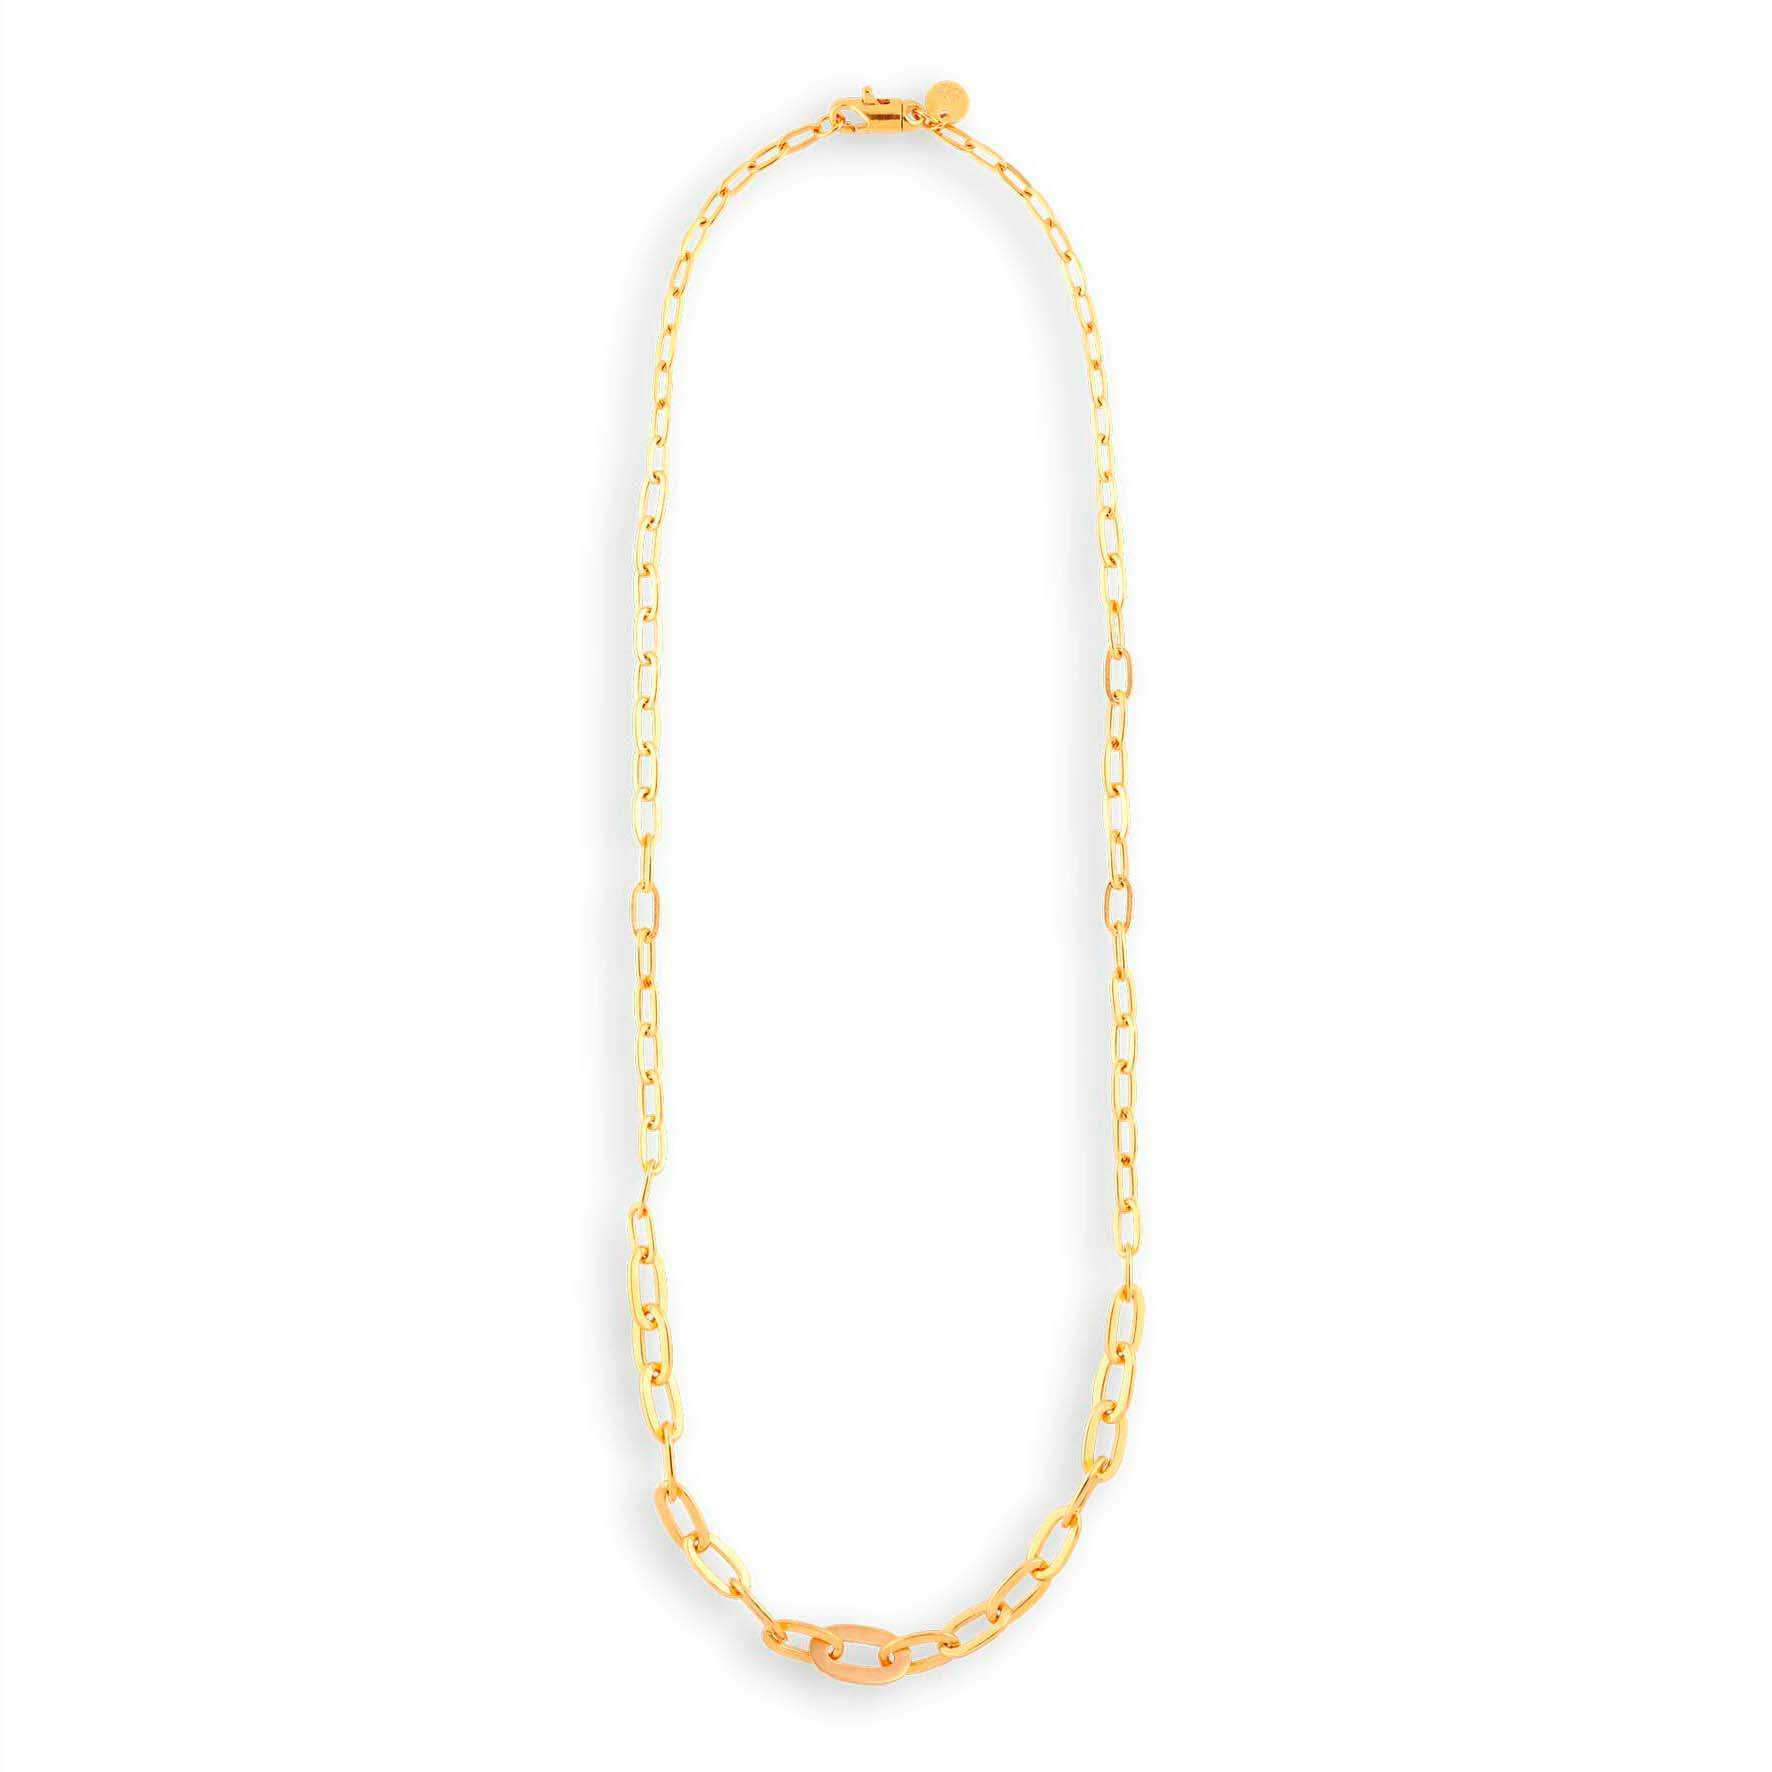 Row Chain Necklace von Jane Kønig in Vergoldet-Silber Sterling 925